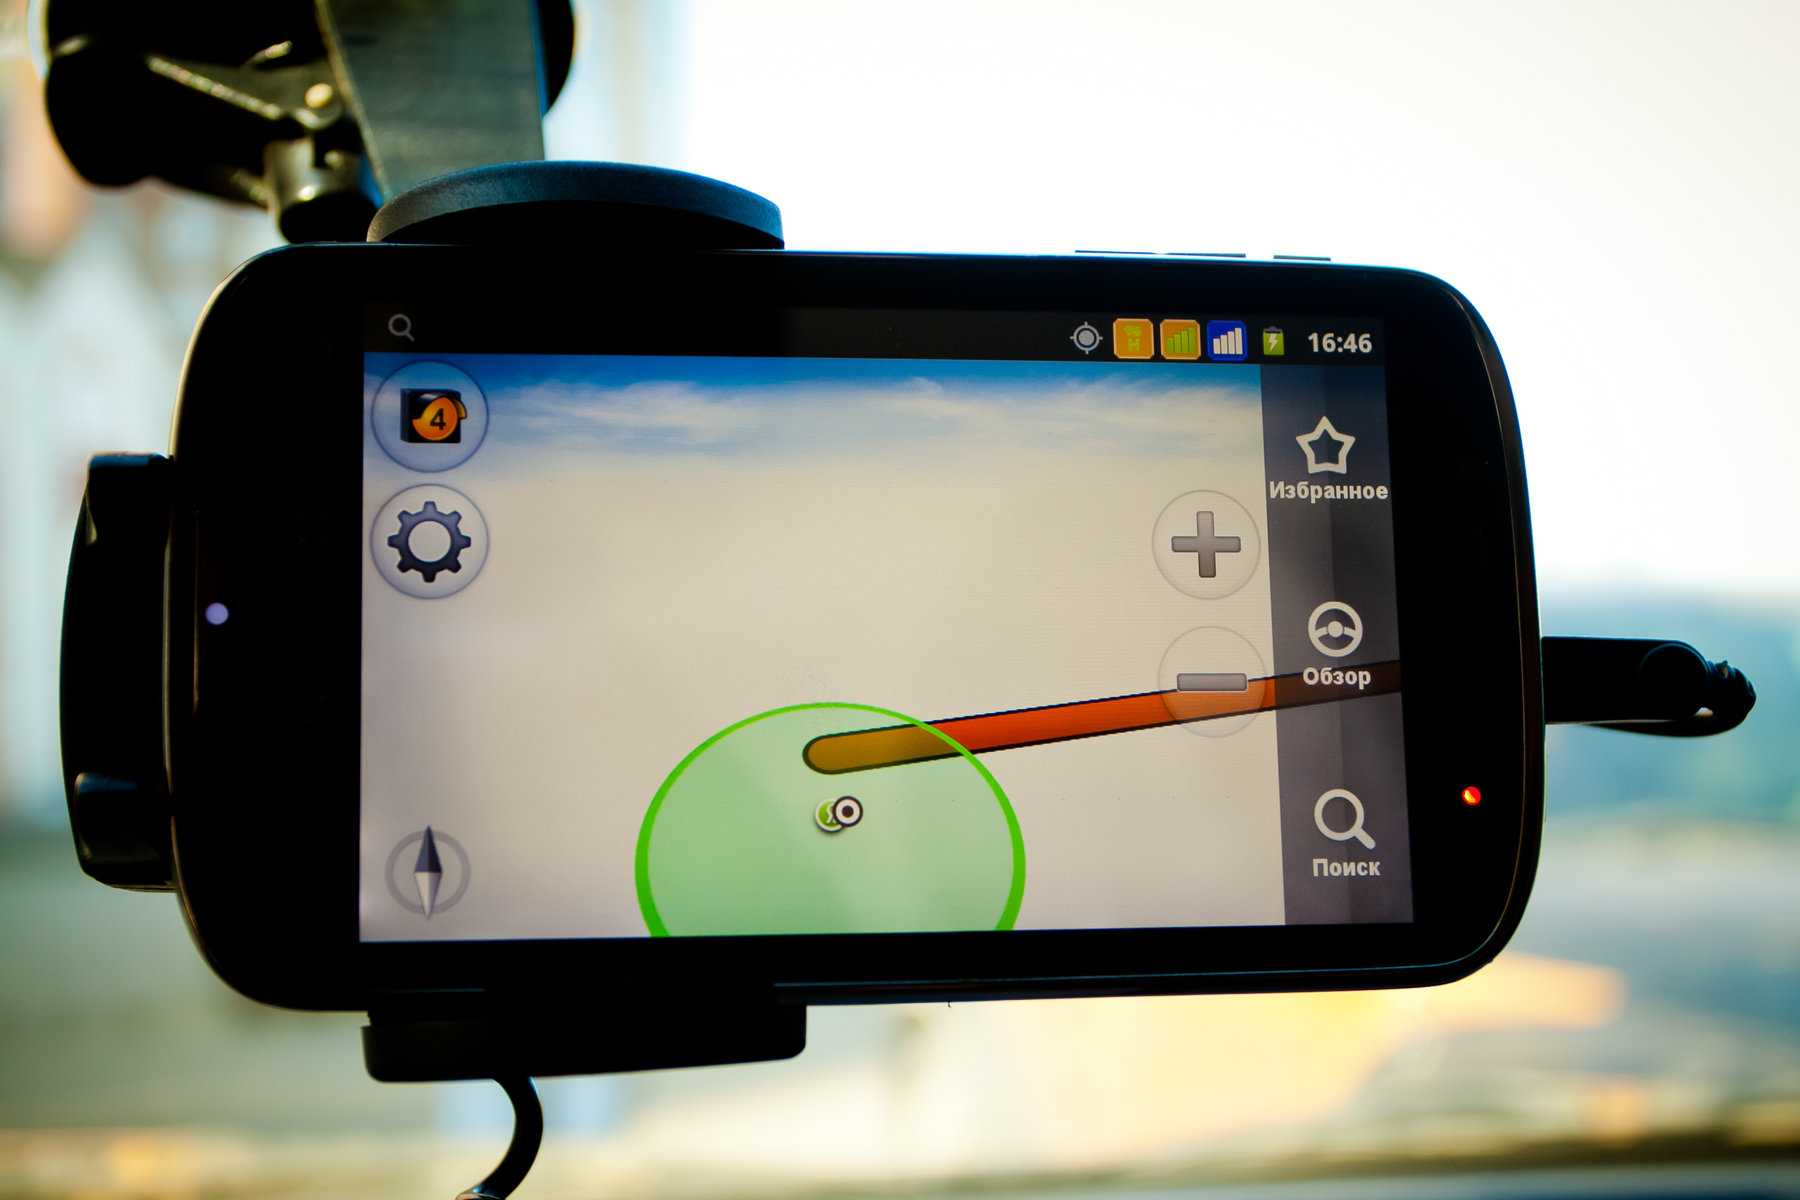 Навигатор для велосипеда и gps приложения для карт и маршрутов, фото и видео